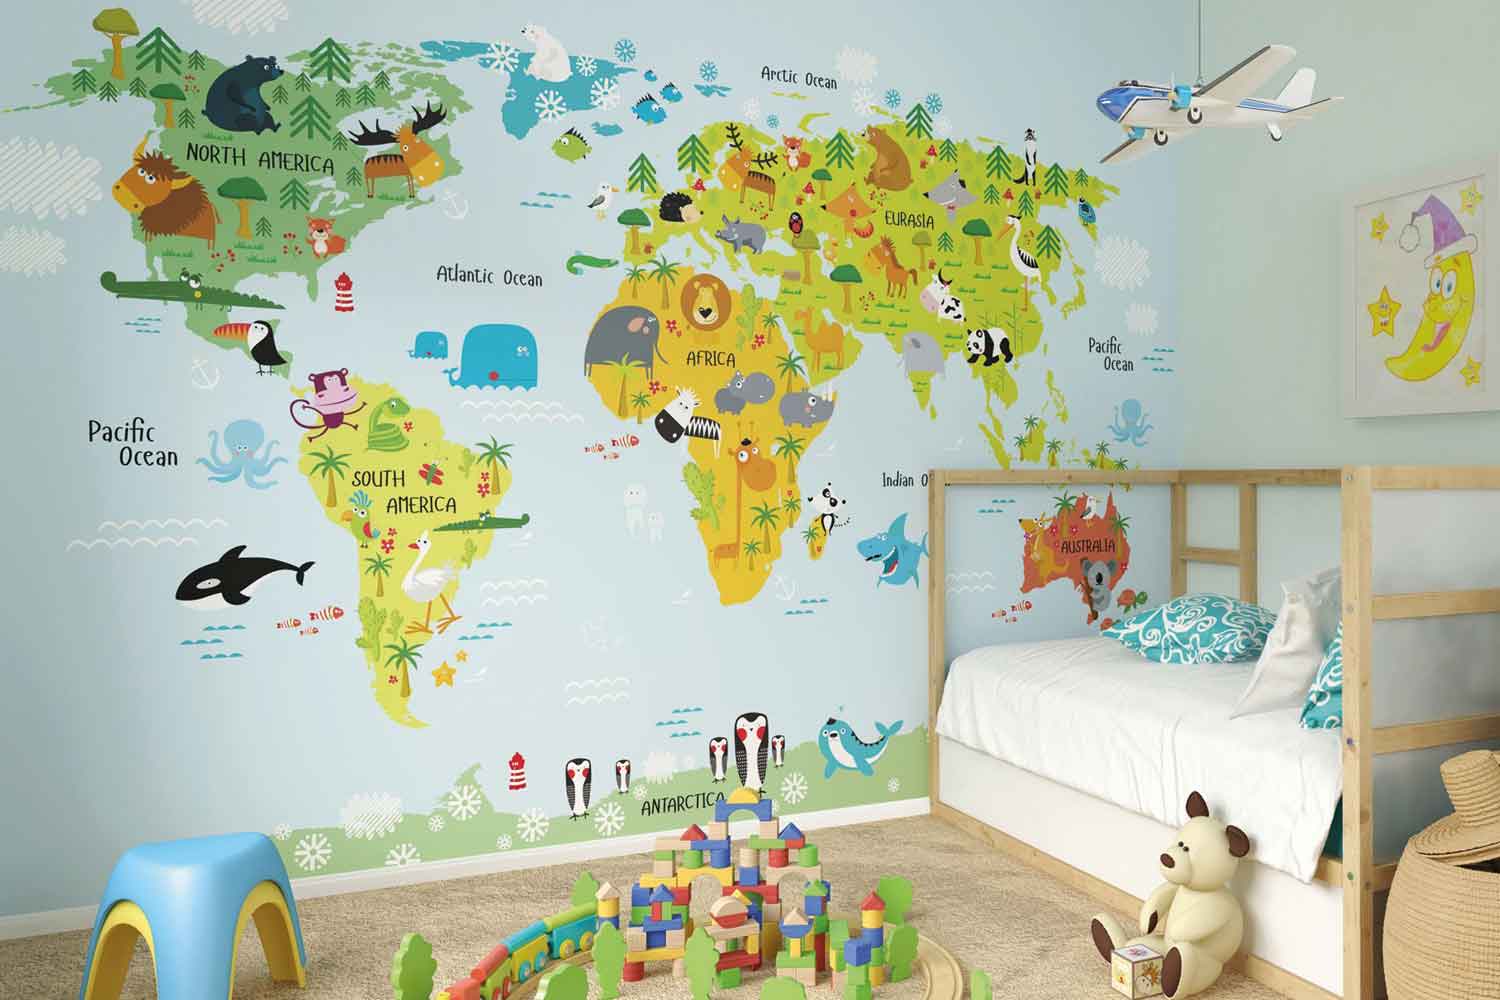 Creative Kids’ Room Decorating Ideas - Interior Design Explained